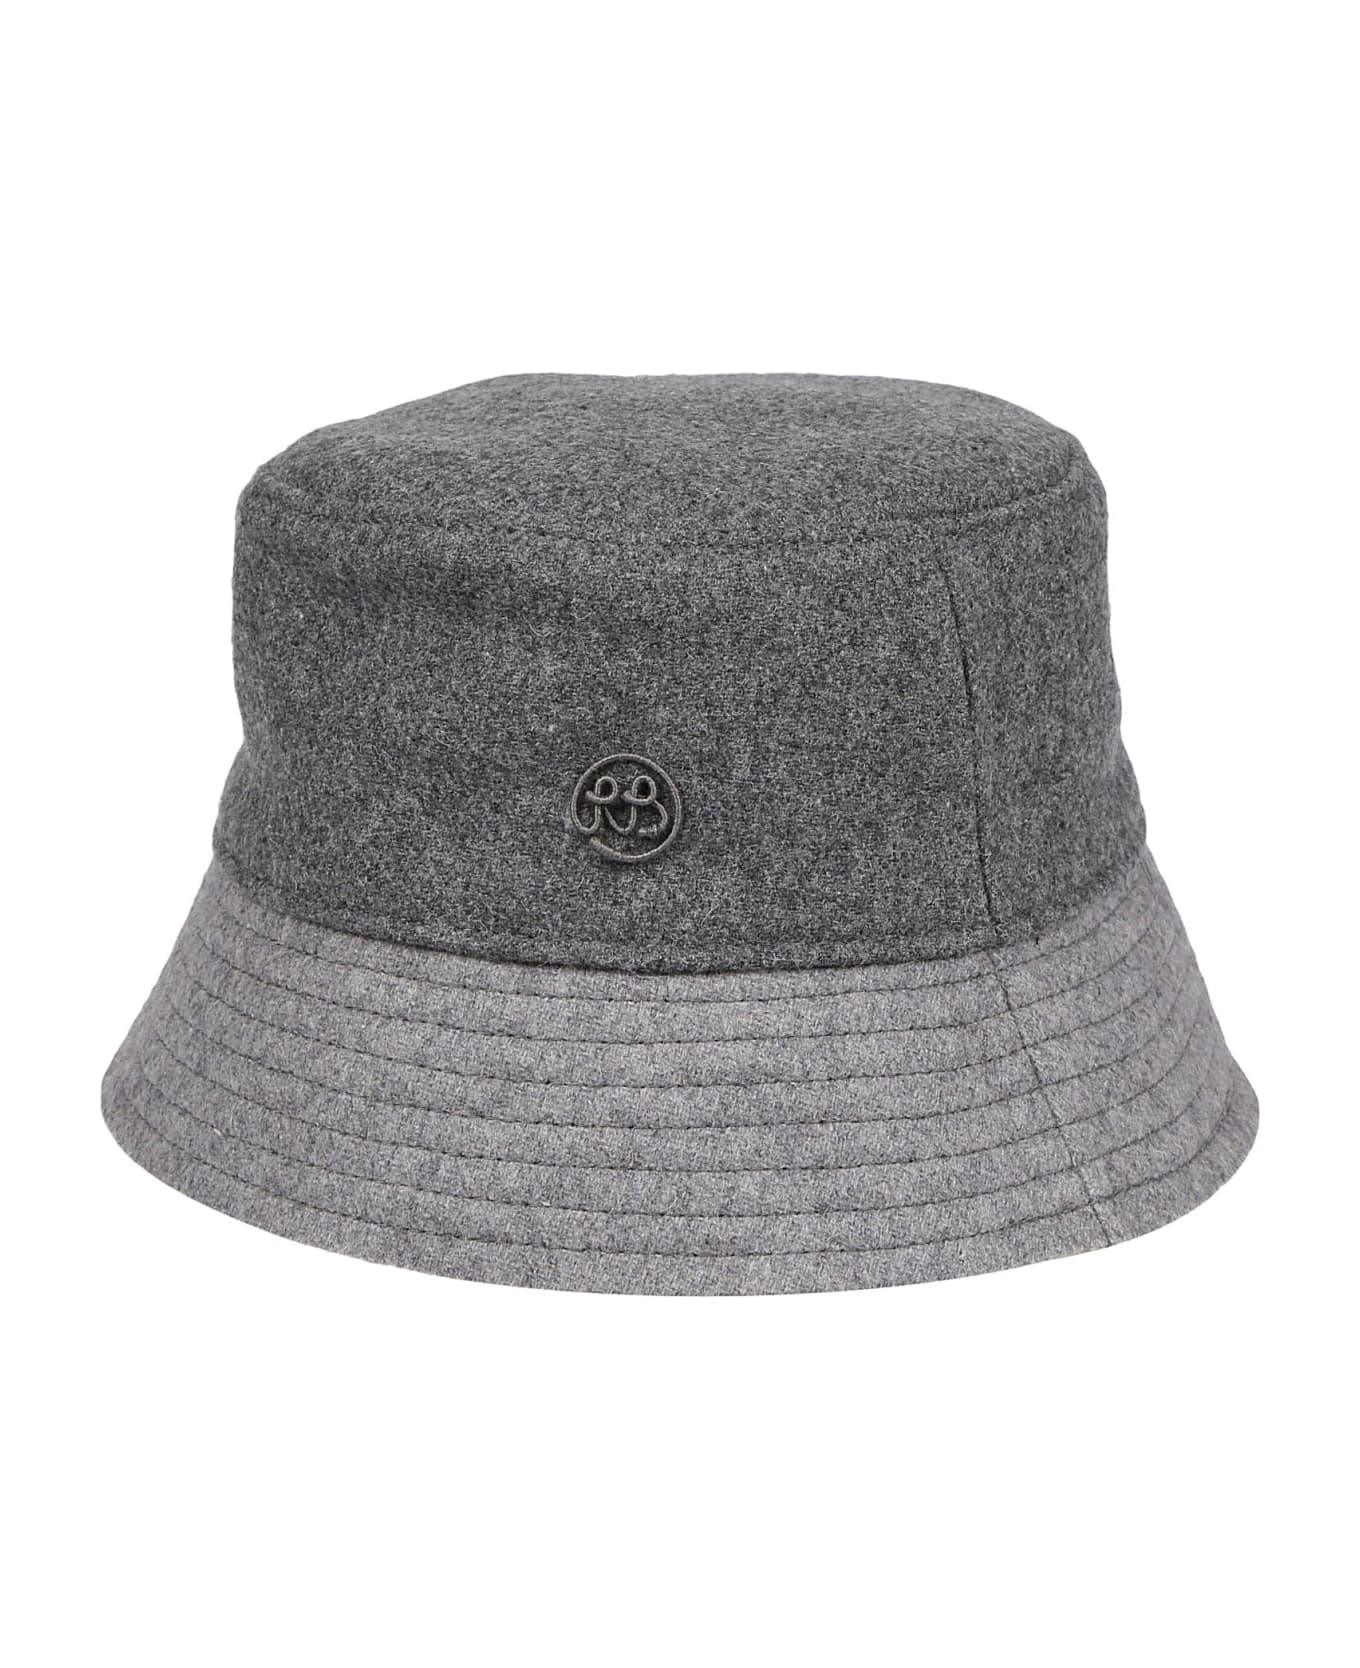 Ruslan Baginskiy Bucket Hat - Multicolor Grey 帽子